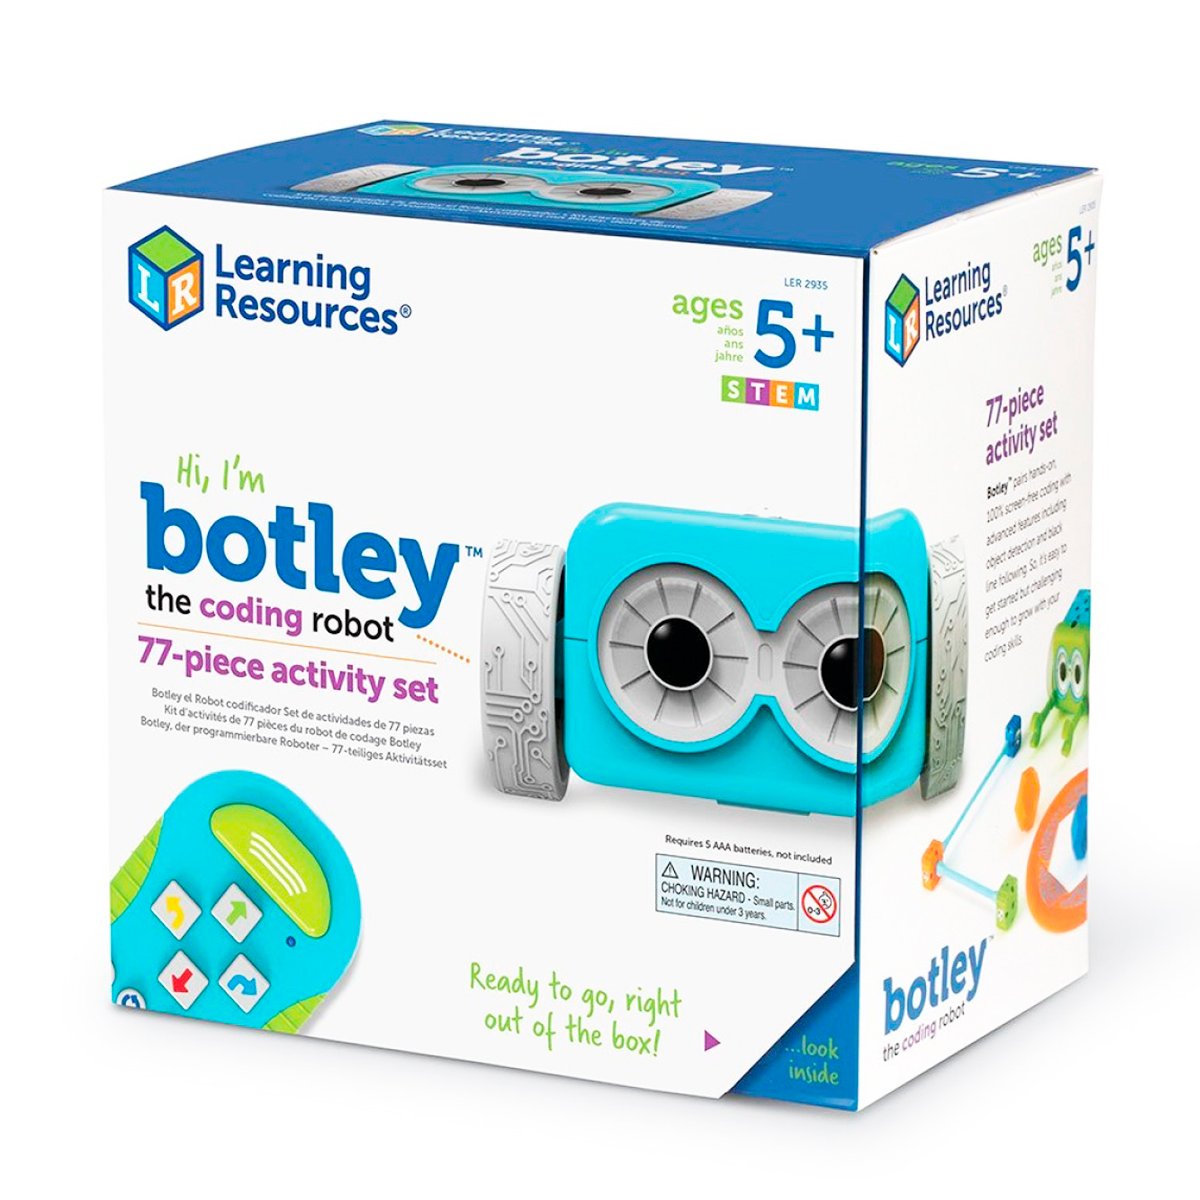 Ігровий Stem-набір Learning Resources Робот Botley (LER2935) - фото 6